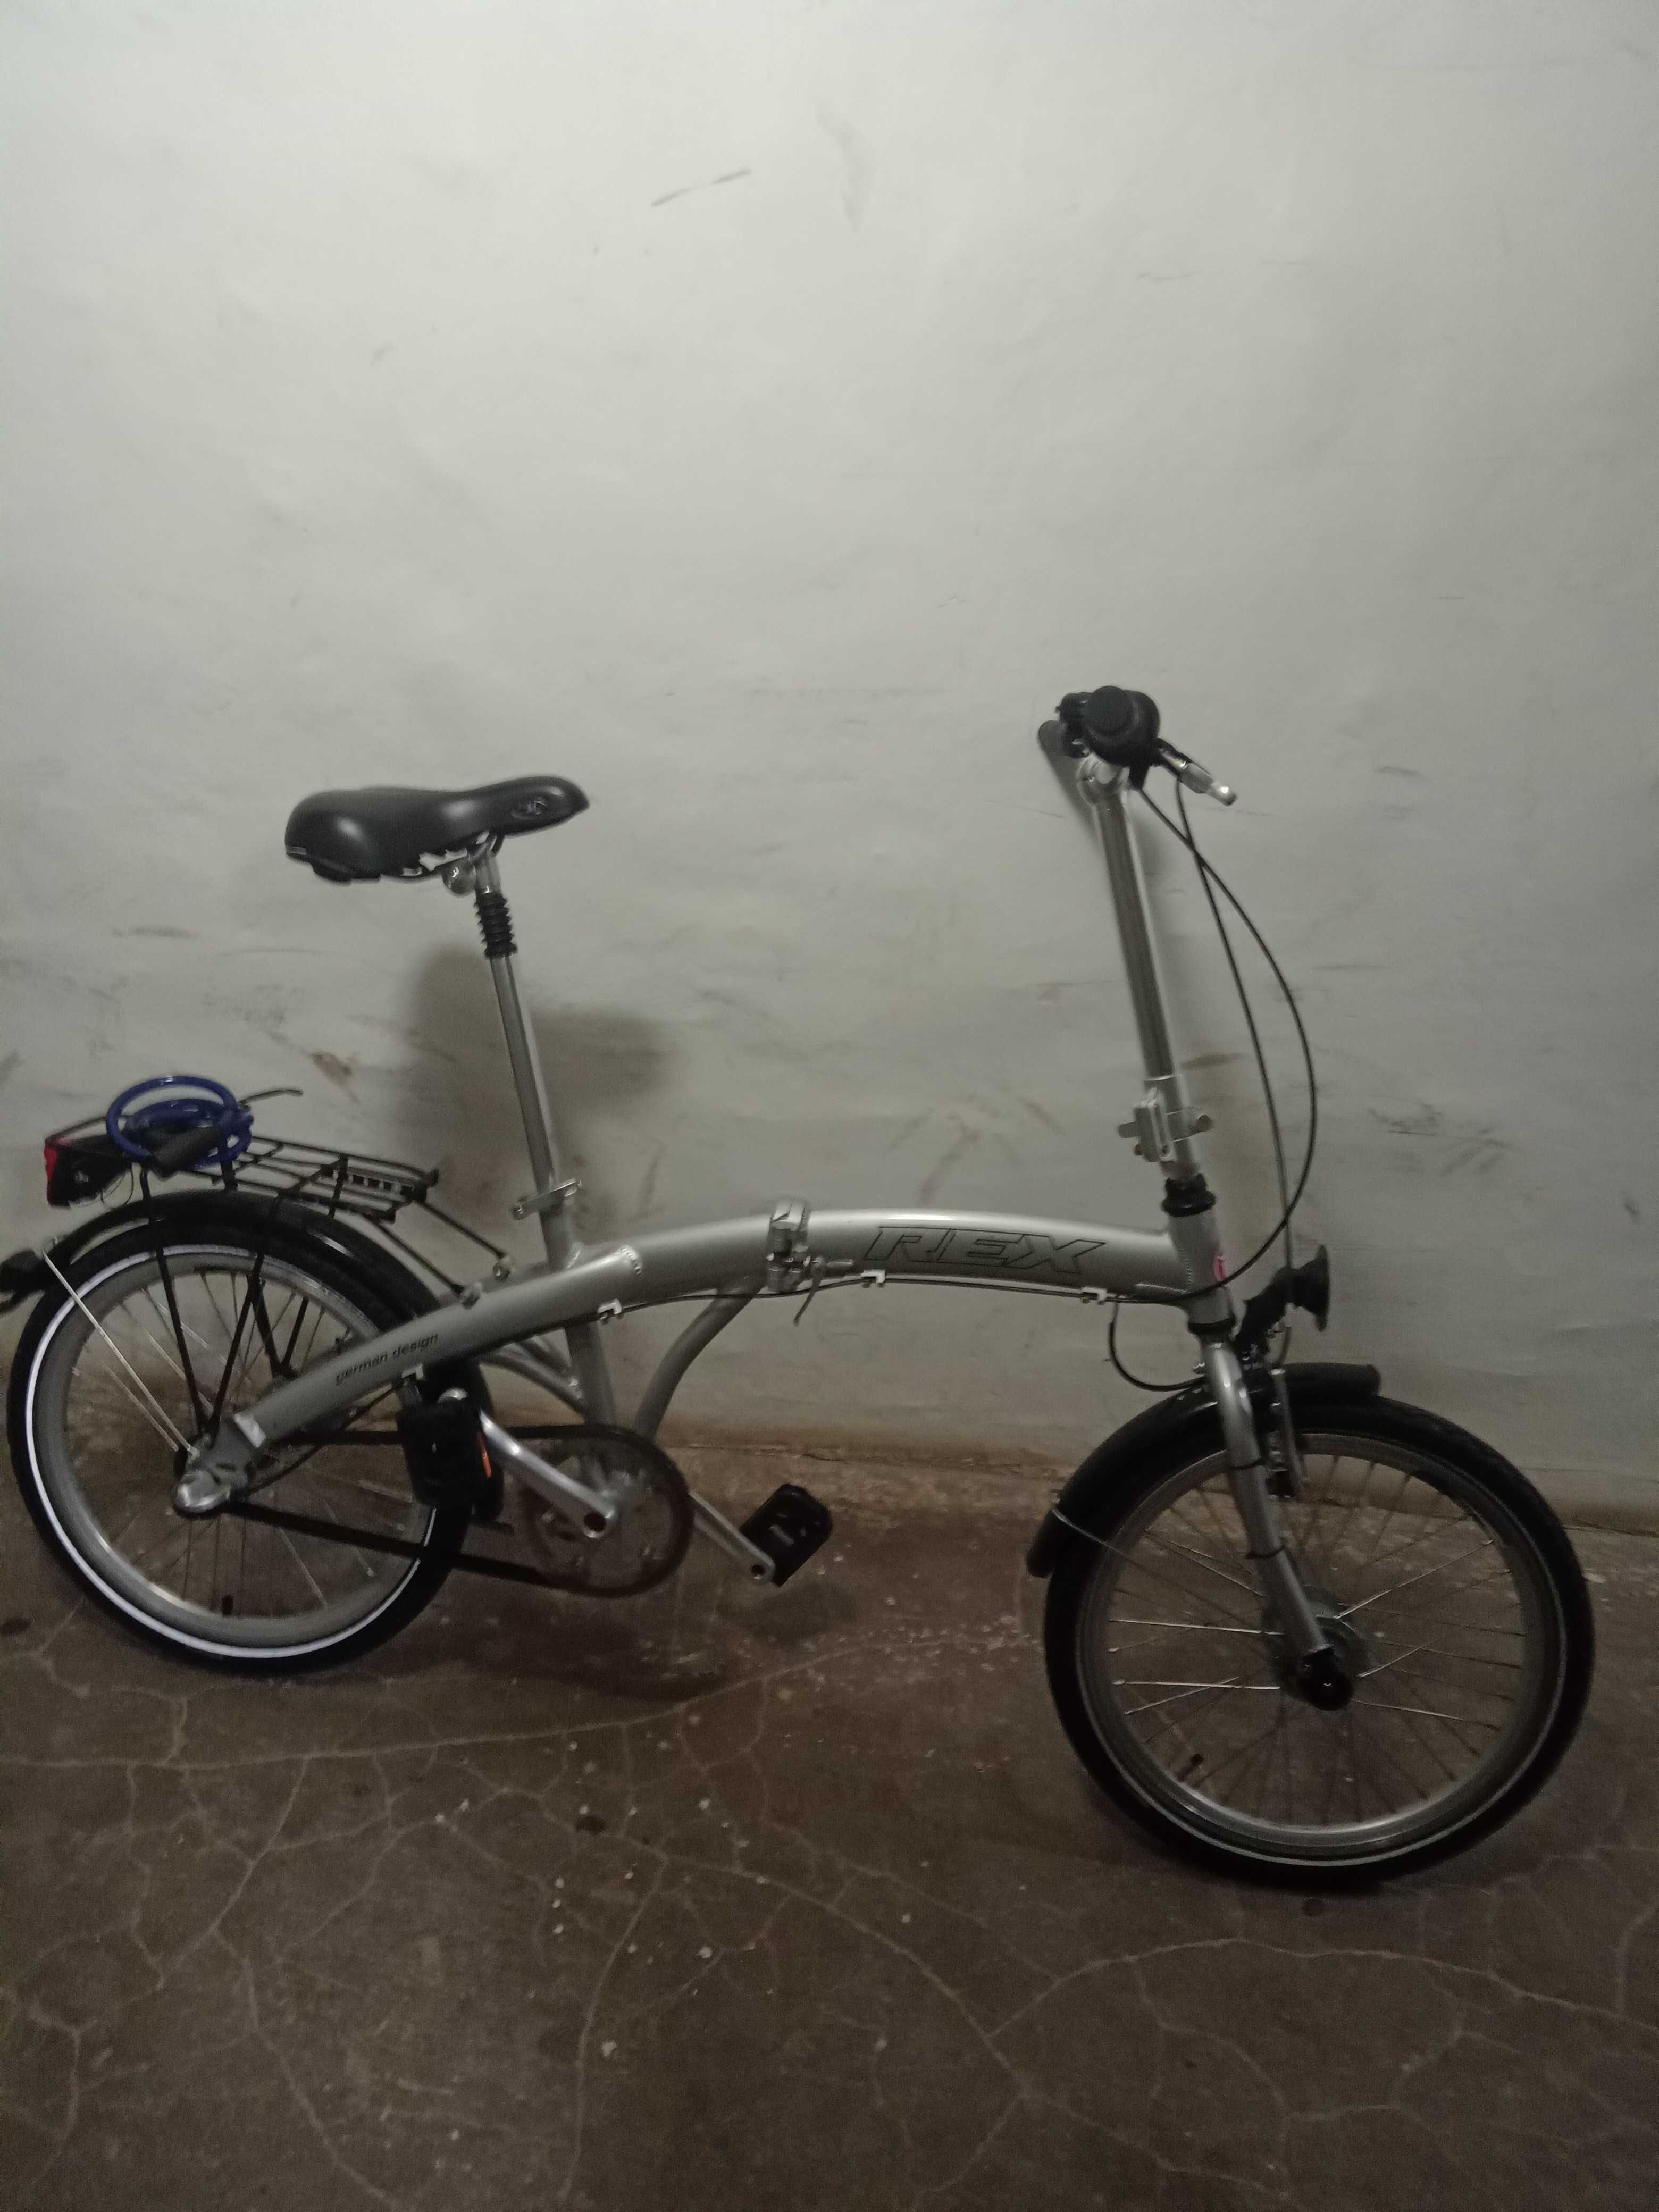 Dwa Turystyczne rowery składane w bdb stanie z przeżutkami